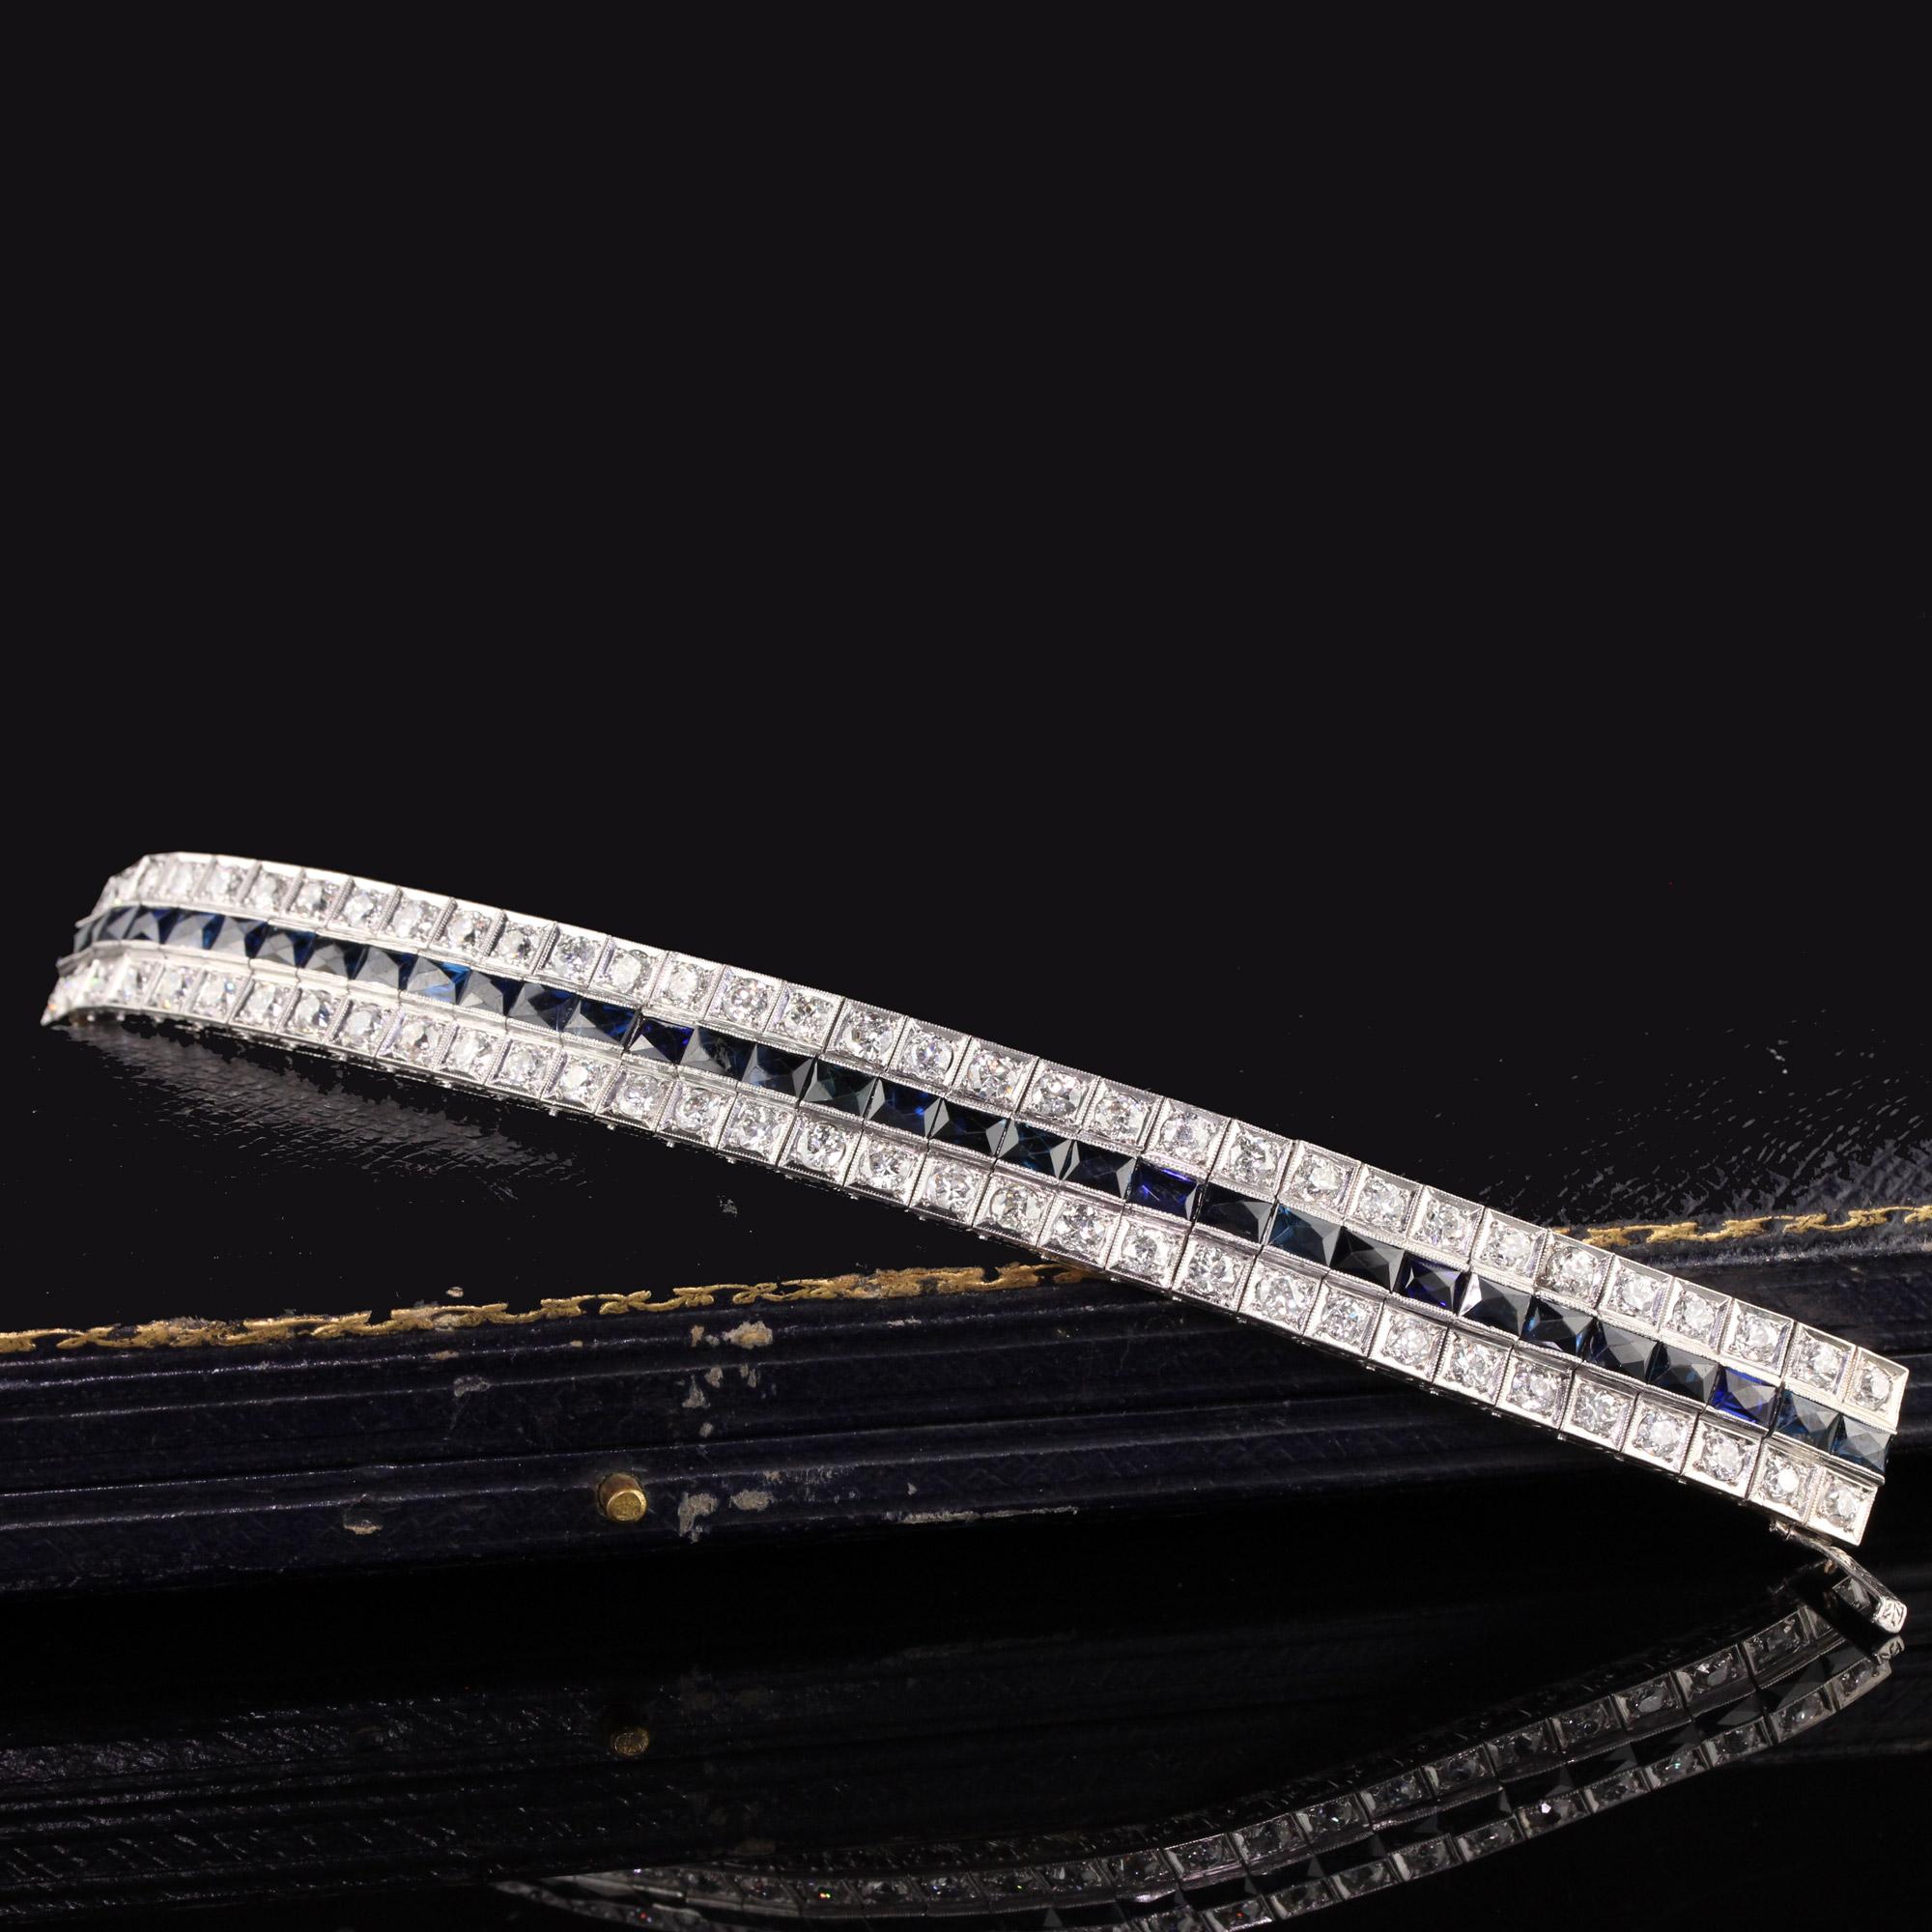 Magnifique bracelet Art Déco Platine Vieille Europe en ligne de diamants et saphirs. Cet incroyable bracelet Art Déco comporte environ 12 cts de diamants et environ 10 cts de saphirs naturels au centre. Il a des gravures sur les côtés et un